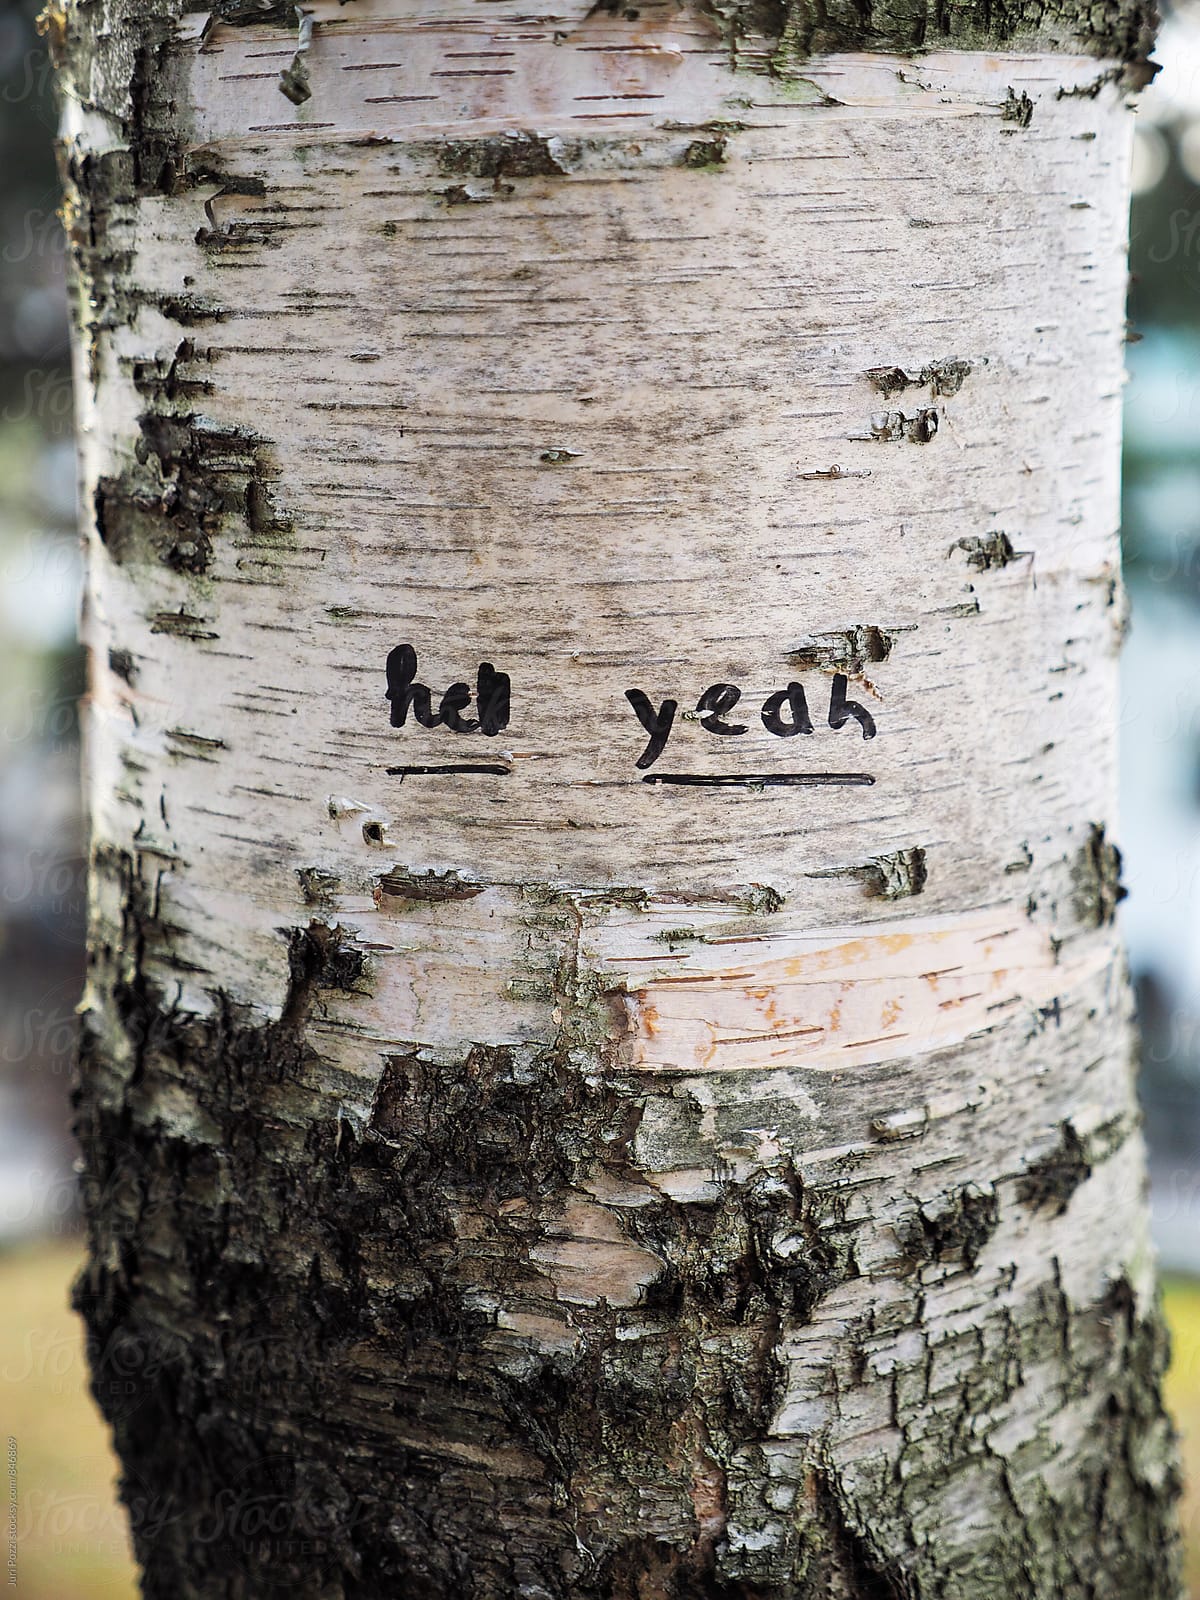 Hell yeah written on a tree